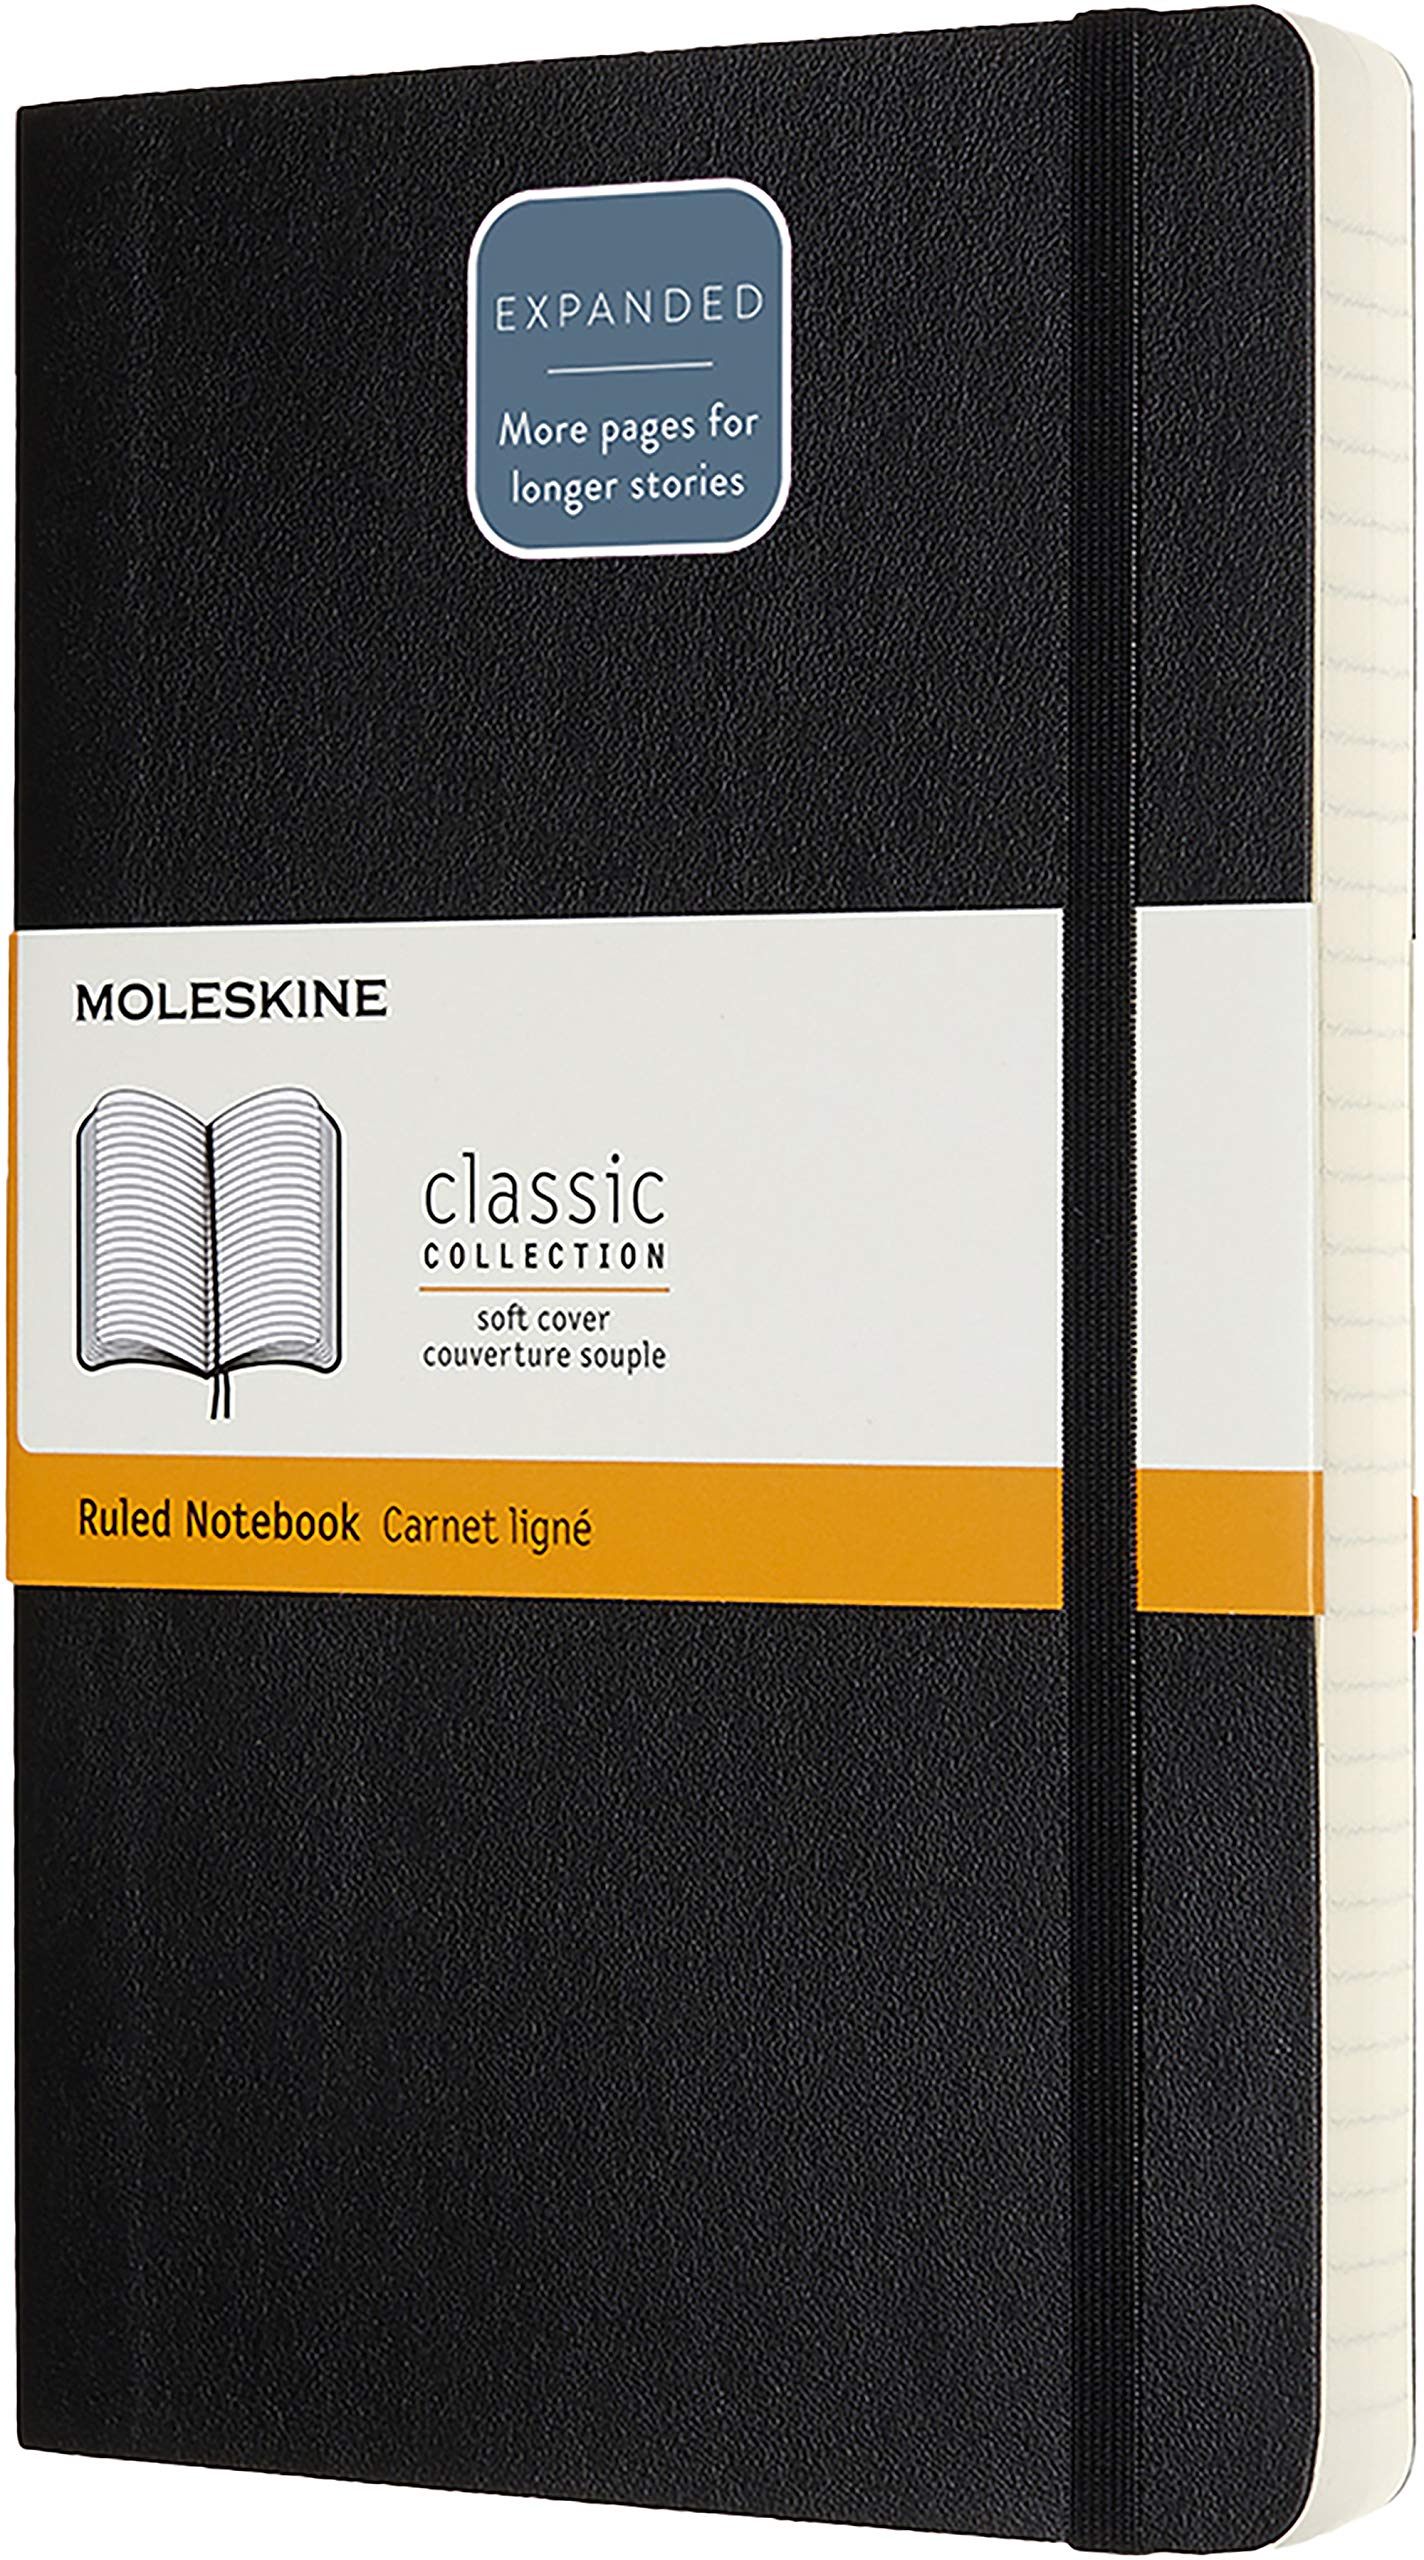 Carnet - Moleskine Expanded Large Ruled - Black | Moleskine image1